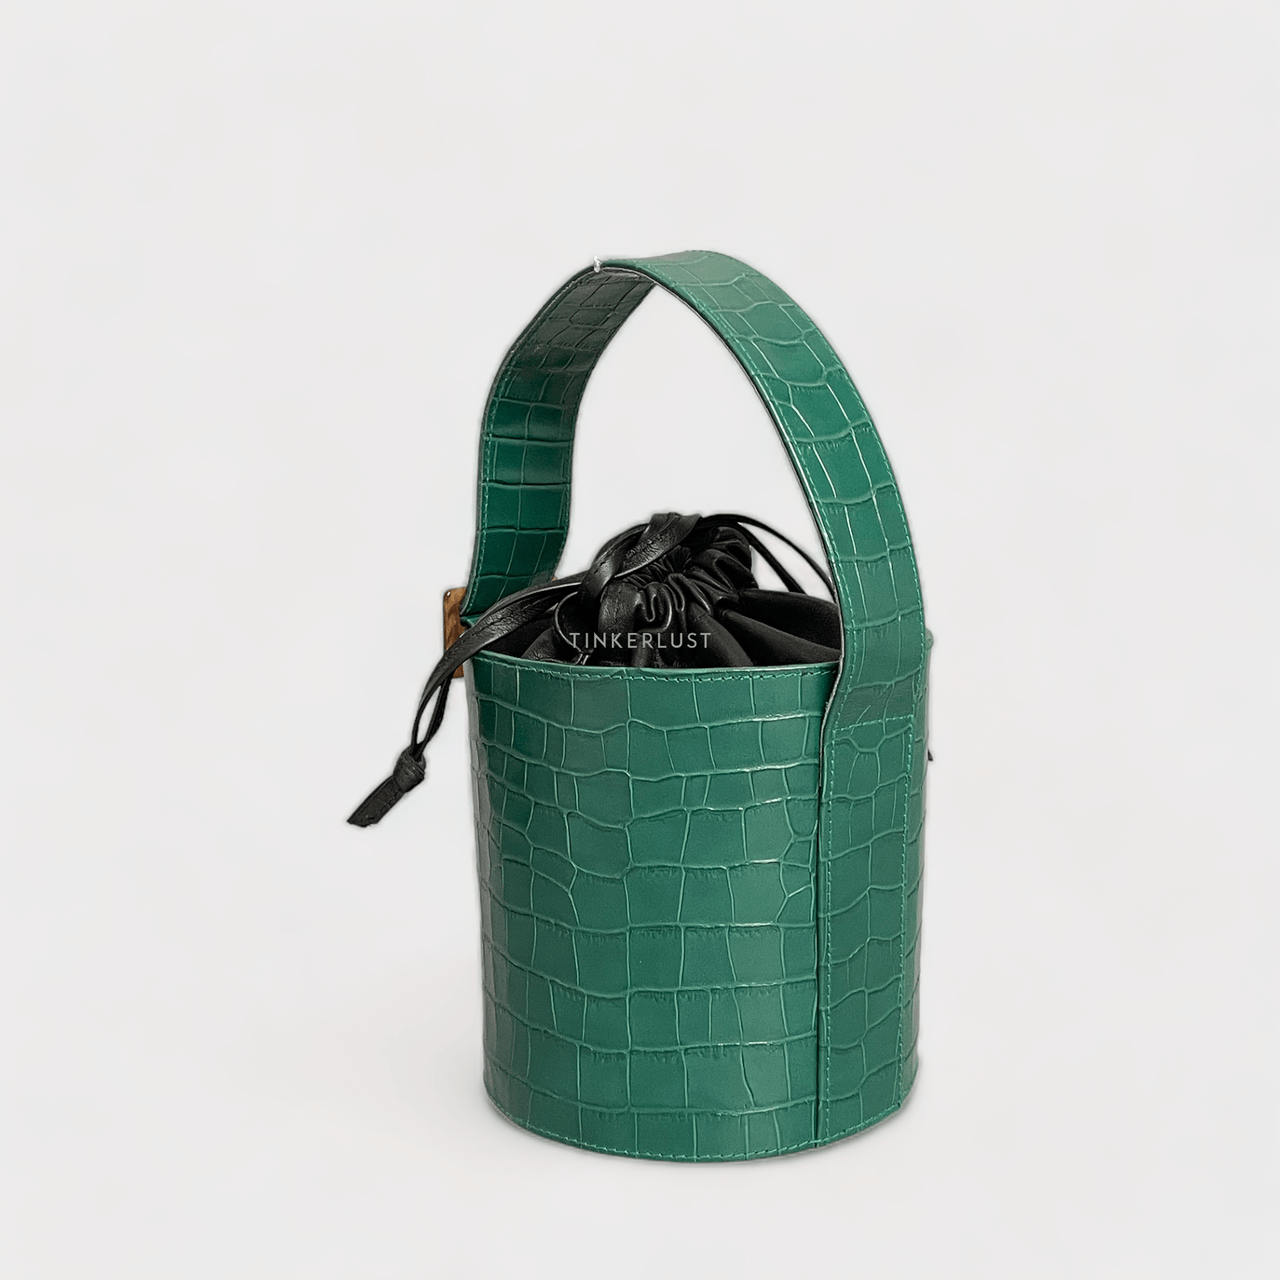 PRIEL Dark Green Croco Handbag